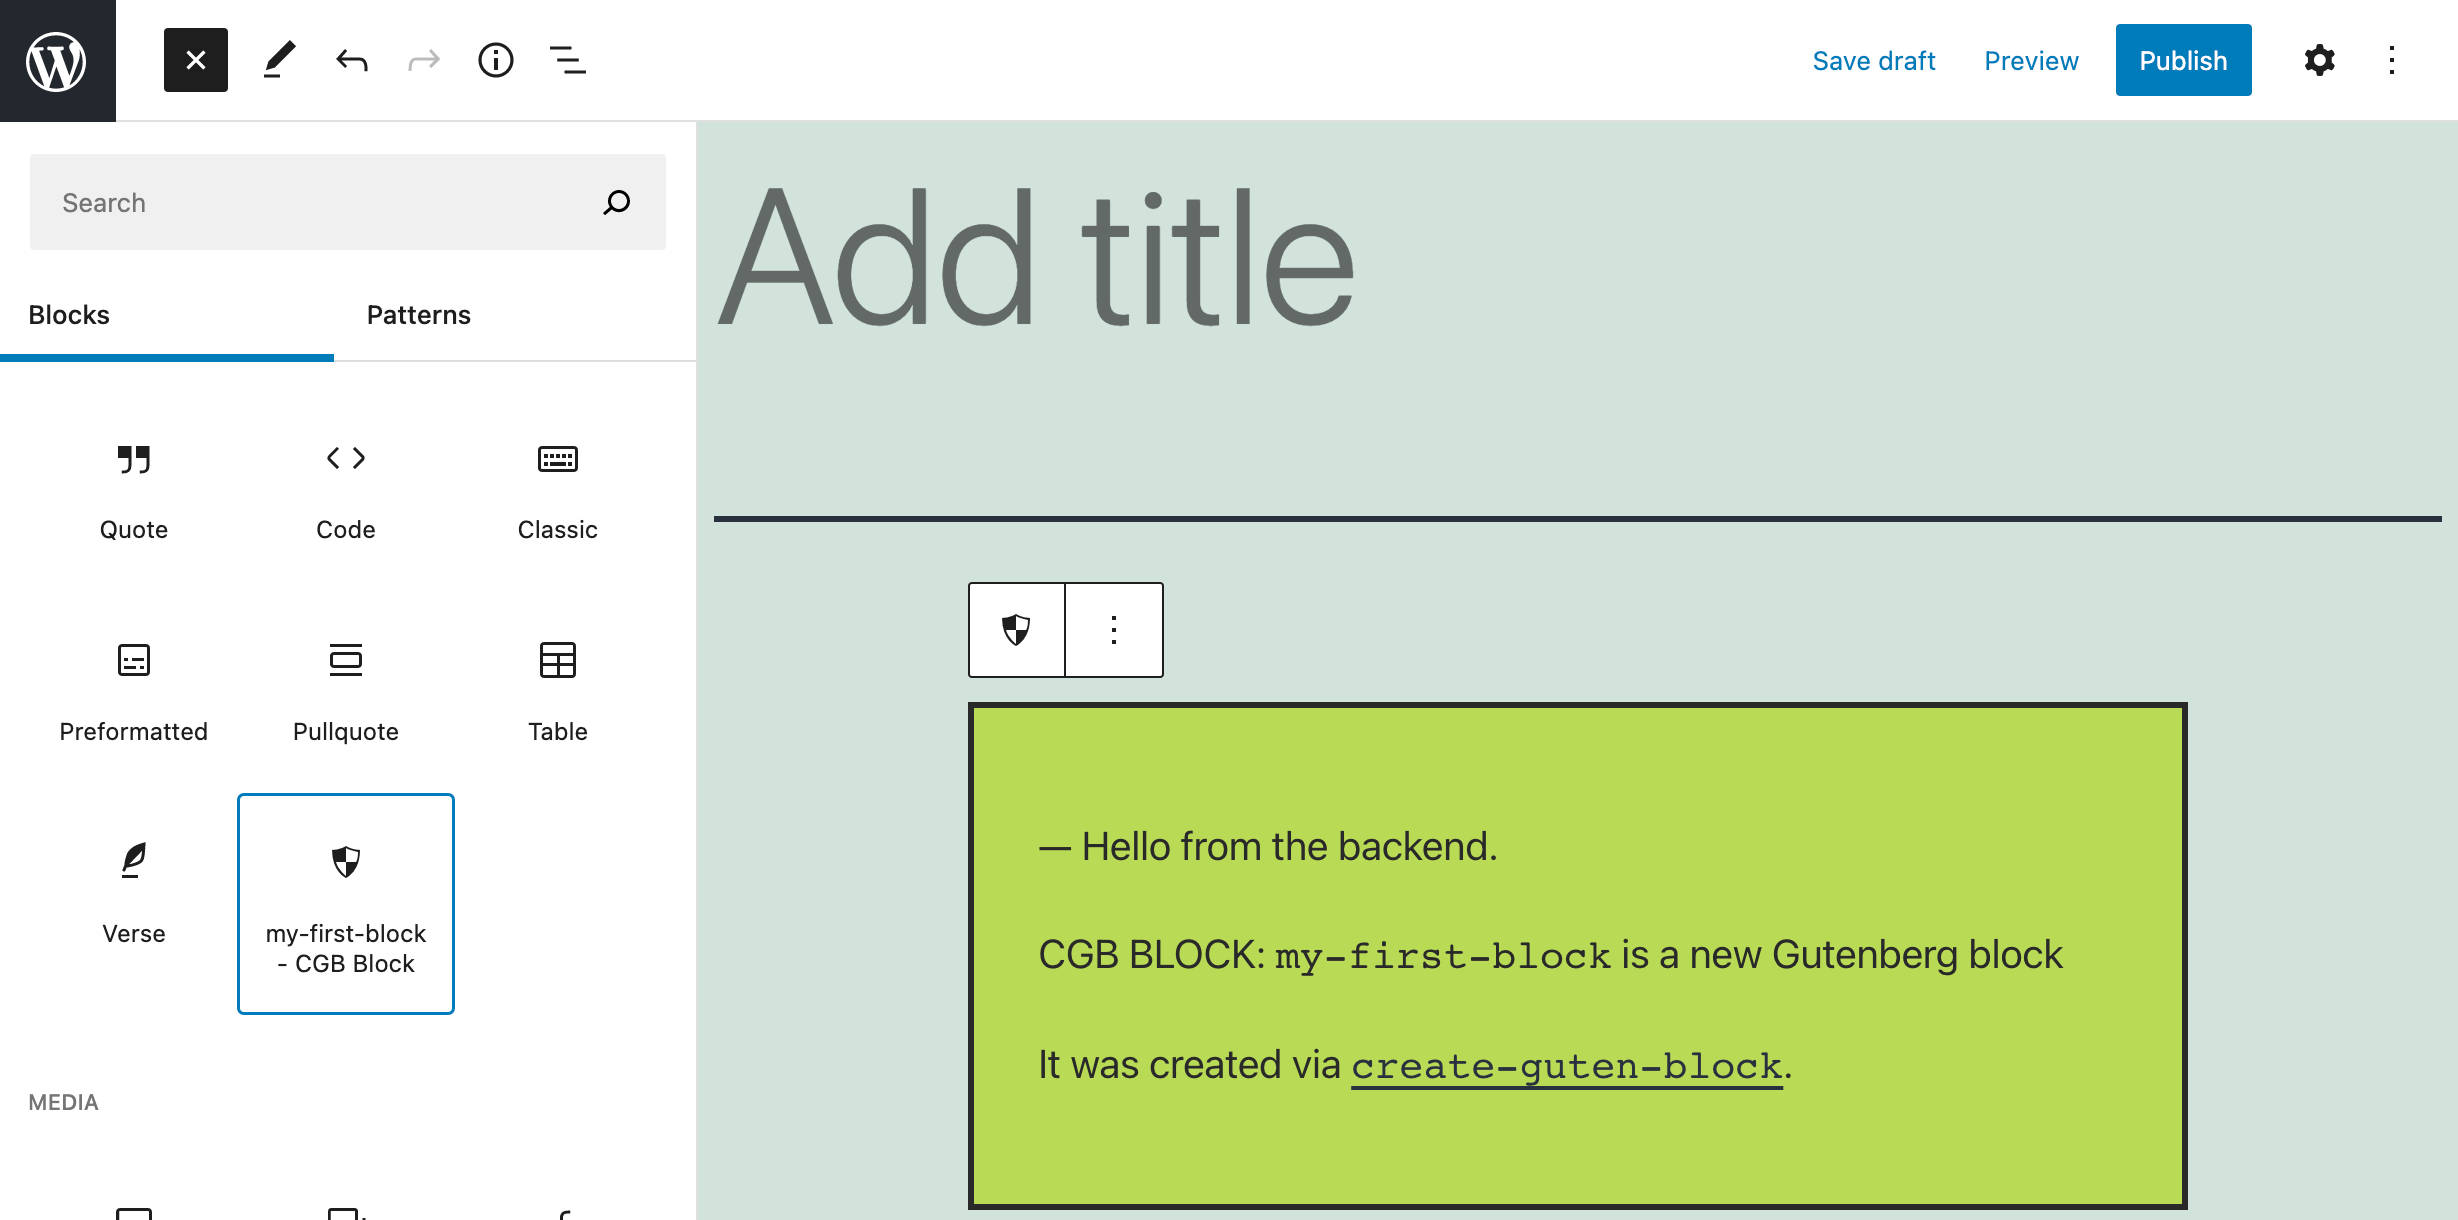 Um novo bloco criado com create-guten-block